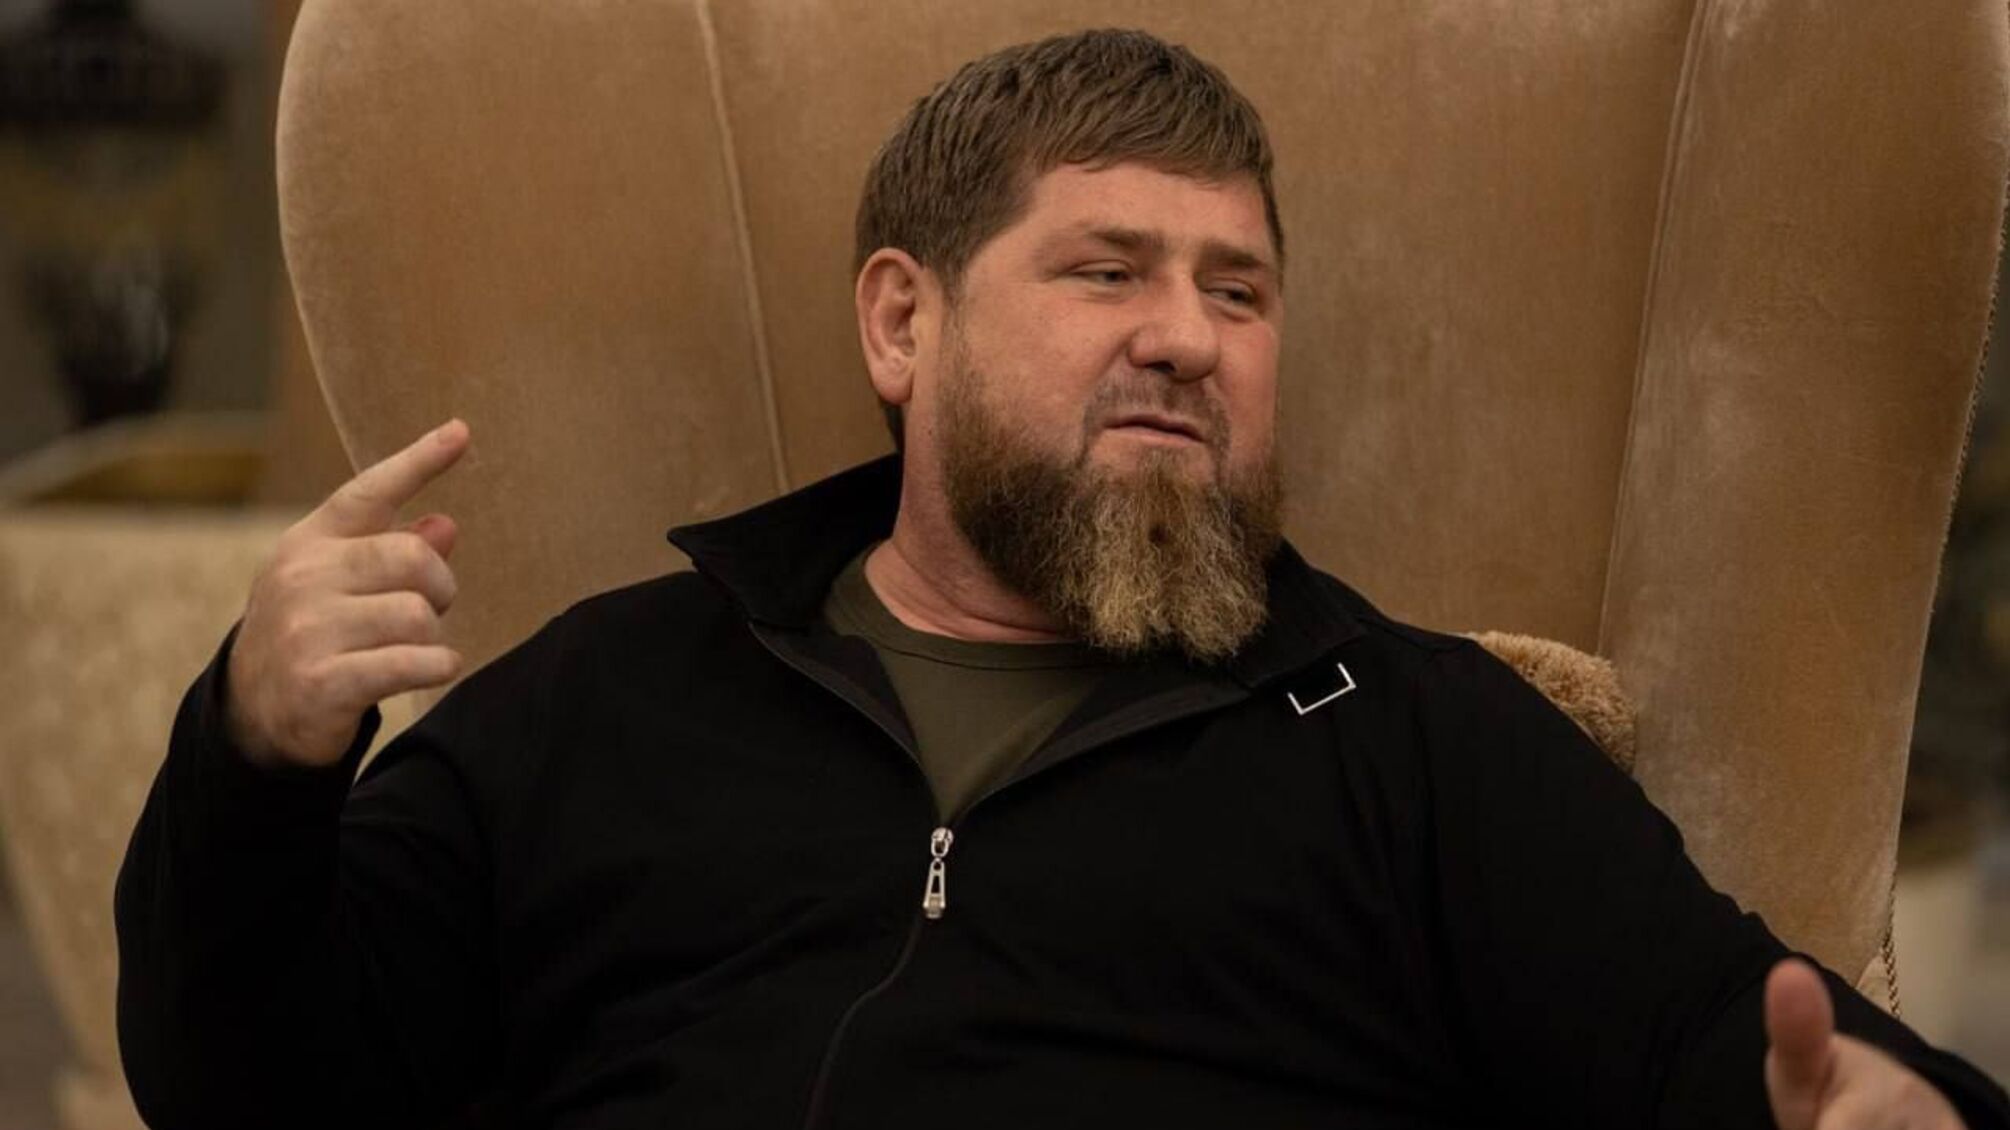 Дубль 2: Кадыров снова заговорил о 'взятии Киева за три дня' и показал пистолет для Зеленского (видео)